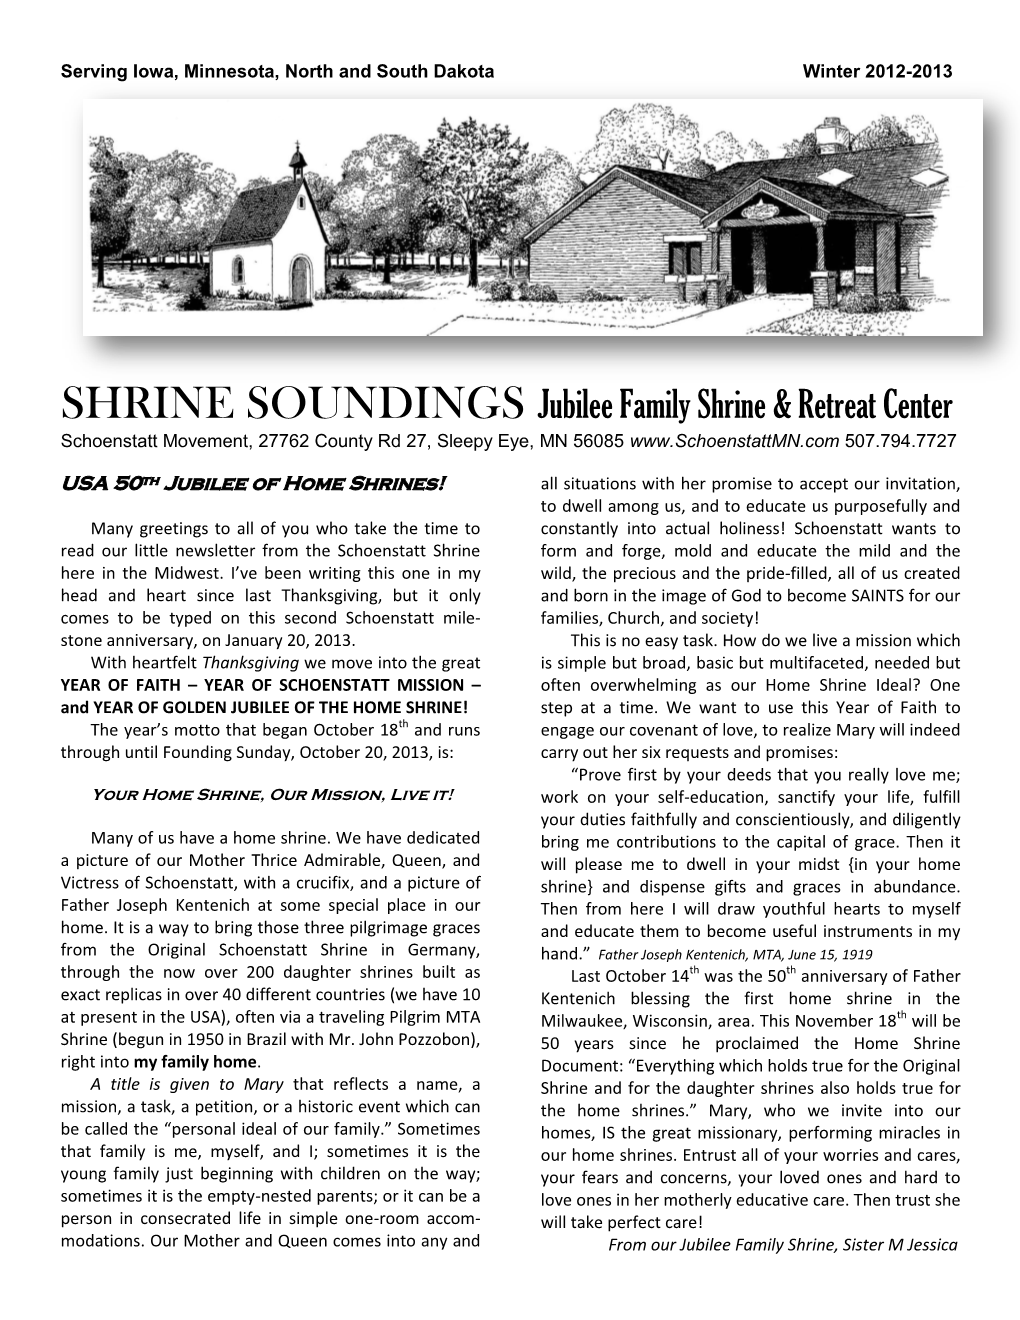 SHRINE SOUNDINGS Jubilee Family Shrine & Retreat Center